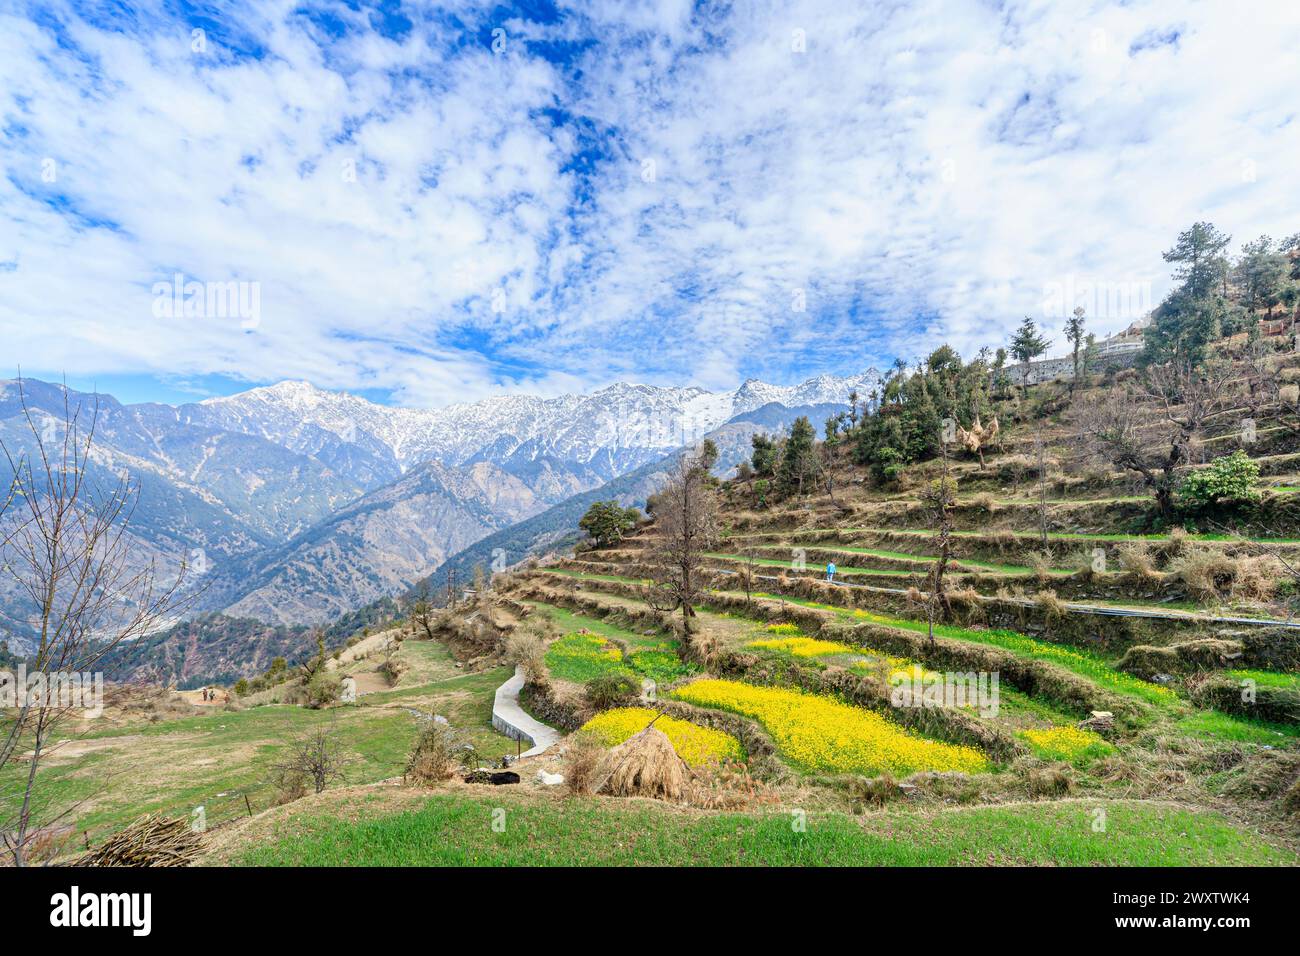 Vista panoramica da Naddi View Point su campi terrazzati pieni di fiori fino alle imponenti e pittoresche montagne innevate della catena himalayana Dhauladhar Foto Stock